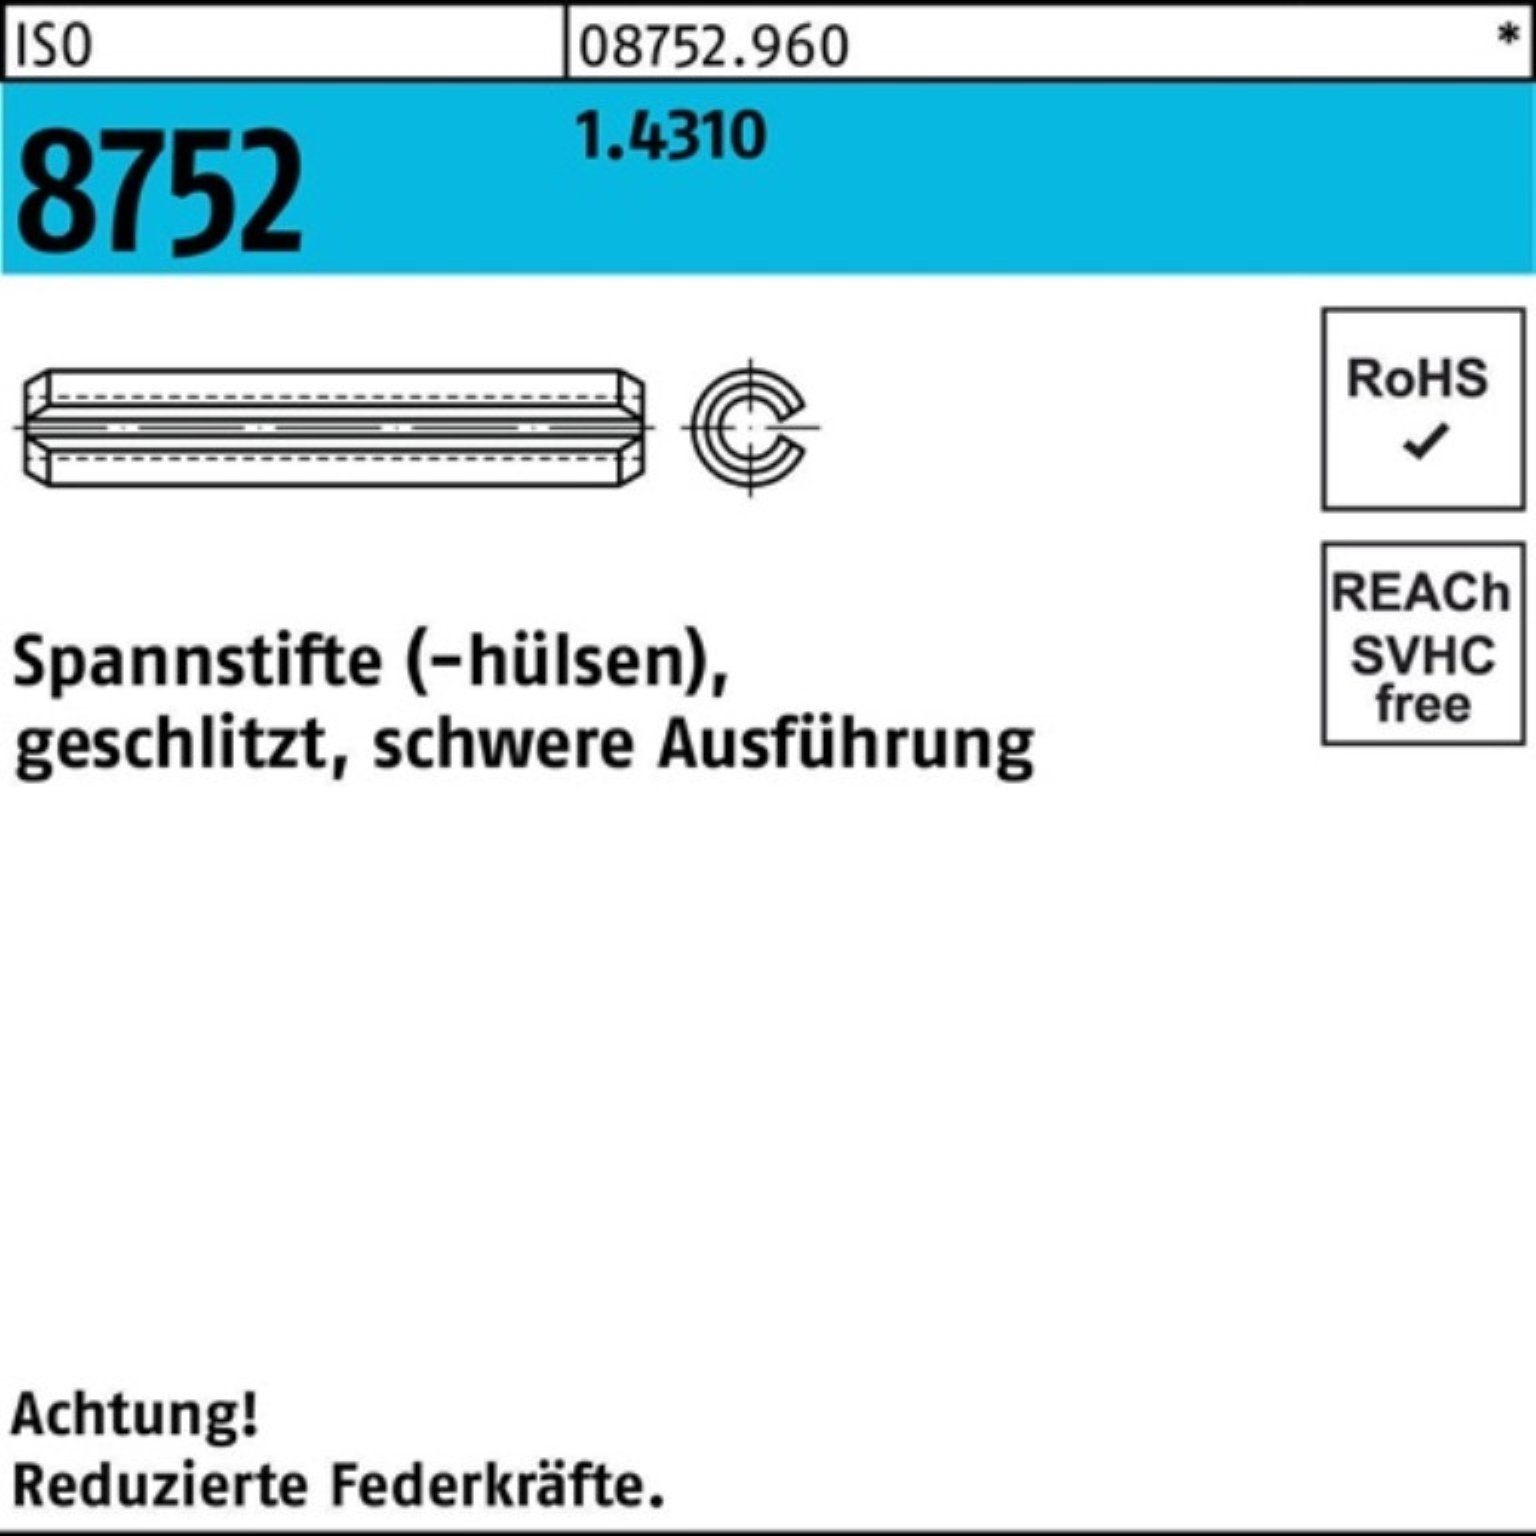 Reyher Spannstift 100er Pack 24 Ausf. 8752 schwere Spannstift geschlitzt 1.4310 2,5x ISO